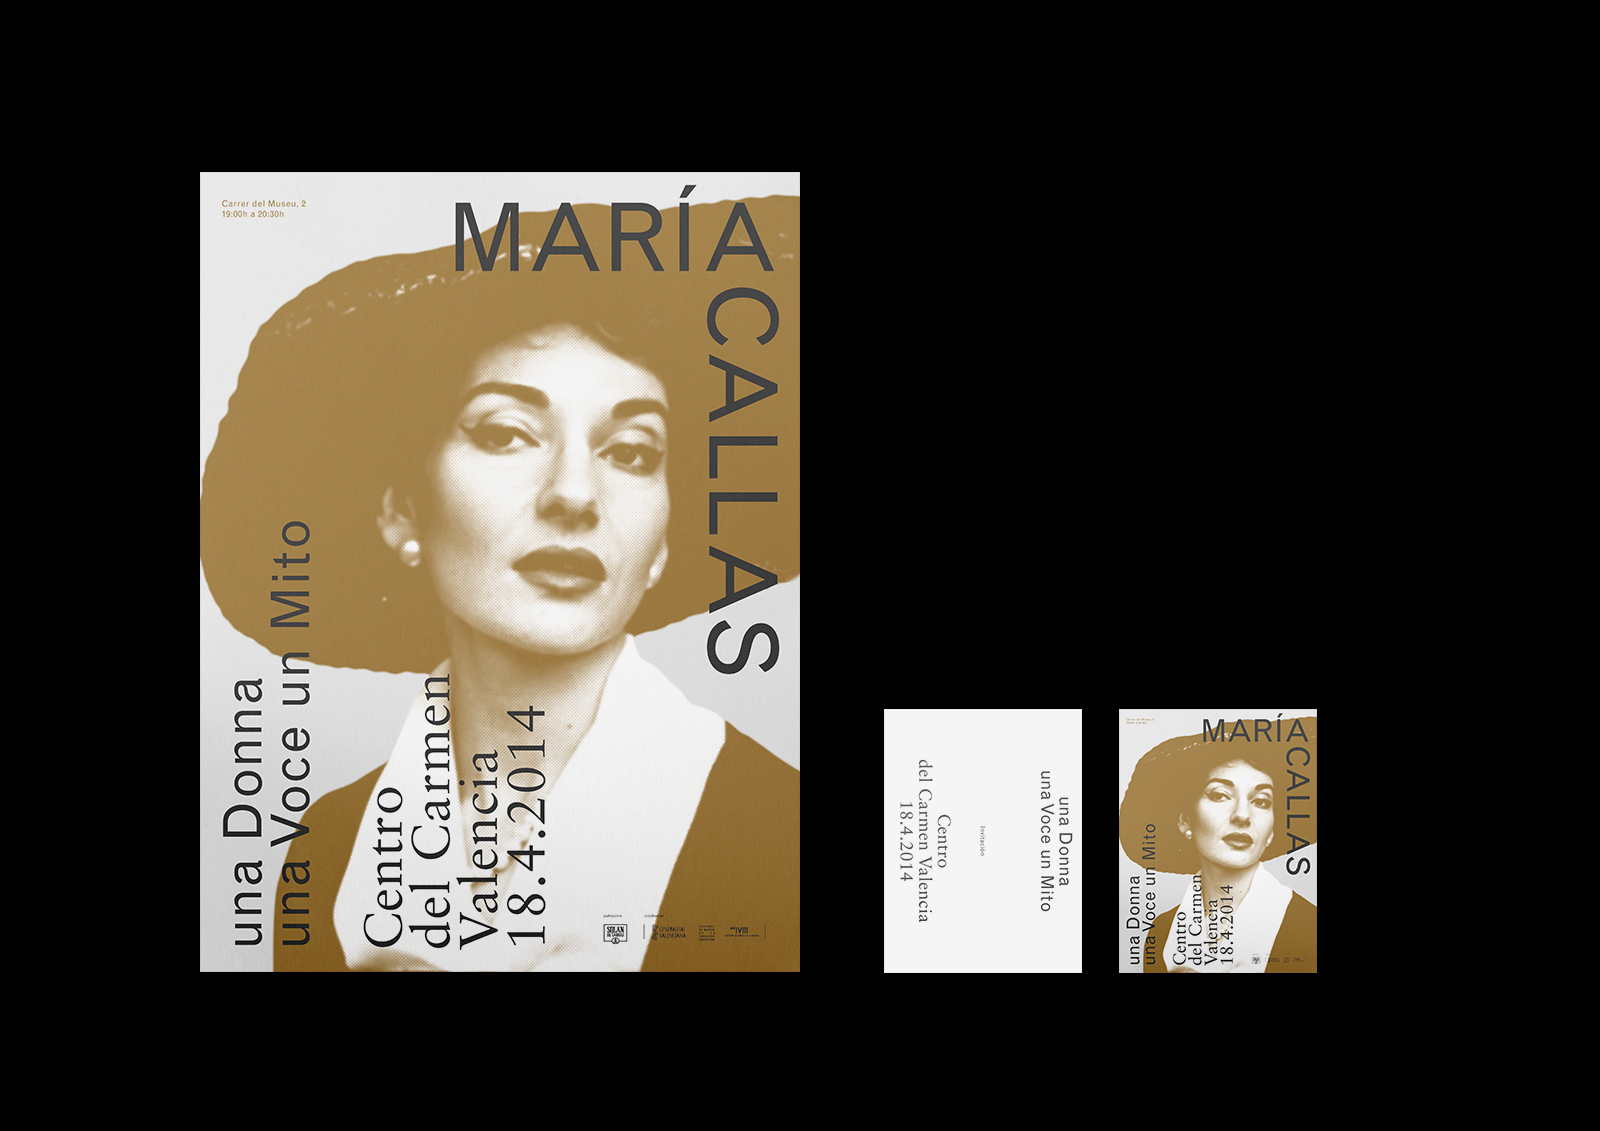 Maria Callas - Diseño gráfico y identidad visual para la exposición monográfica sobre Maria Callas en el Centro del Carmen de Valencia